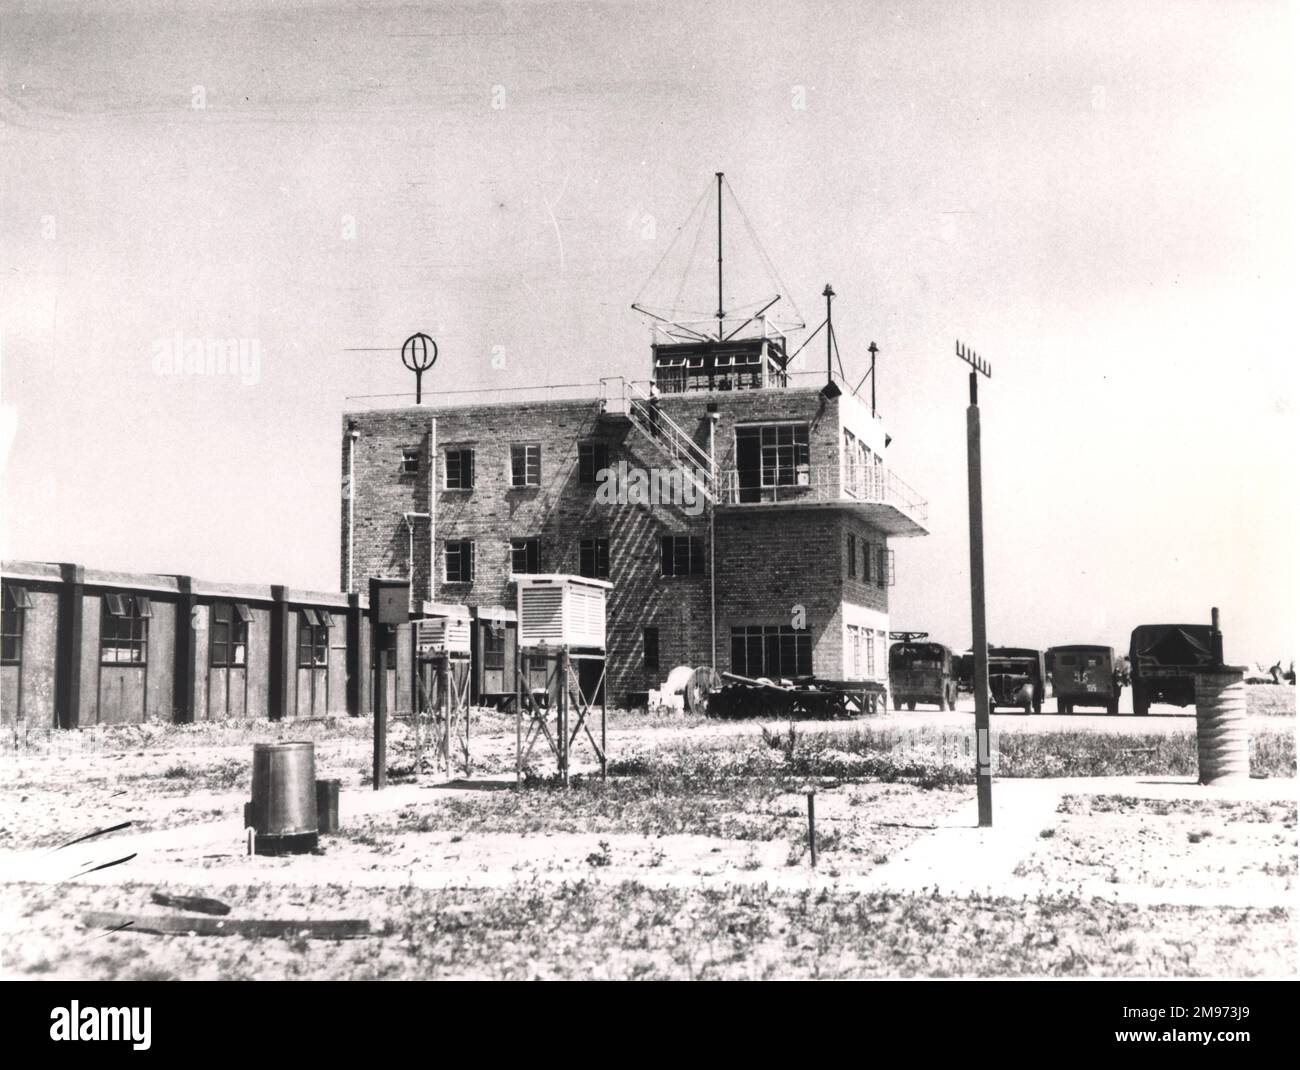 La tour de contrôle du côté nord a été construite par la RAF sur des lignes militaires familières. Dans cette vue de 1945, on peut voir un RAF Anson et plusieurs véhicules militaires de ravitaillement, ainsi que les préfabs qui hébergeaient le personnel de l'aéroport. Des opérateurs météorologiques, téléimprimeurs et radiophoniques étaient basés dans les bâtiments adjacents à la tour de contrôle. Banque D'Images